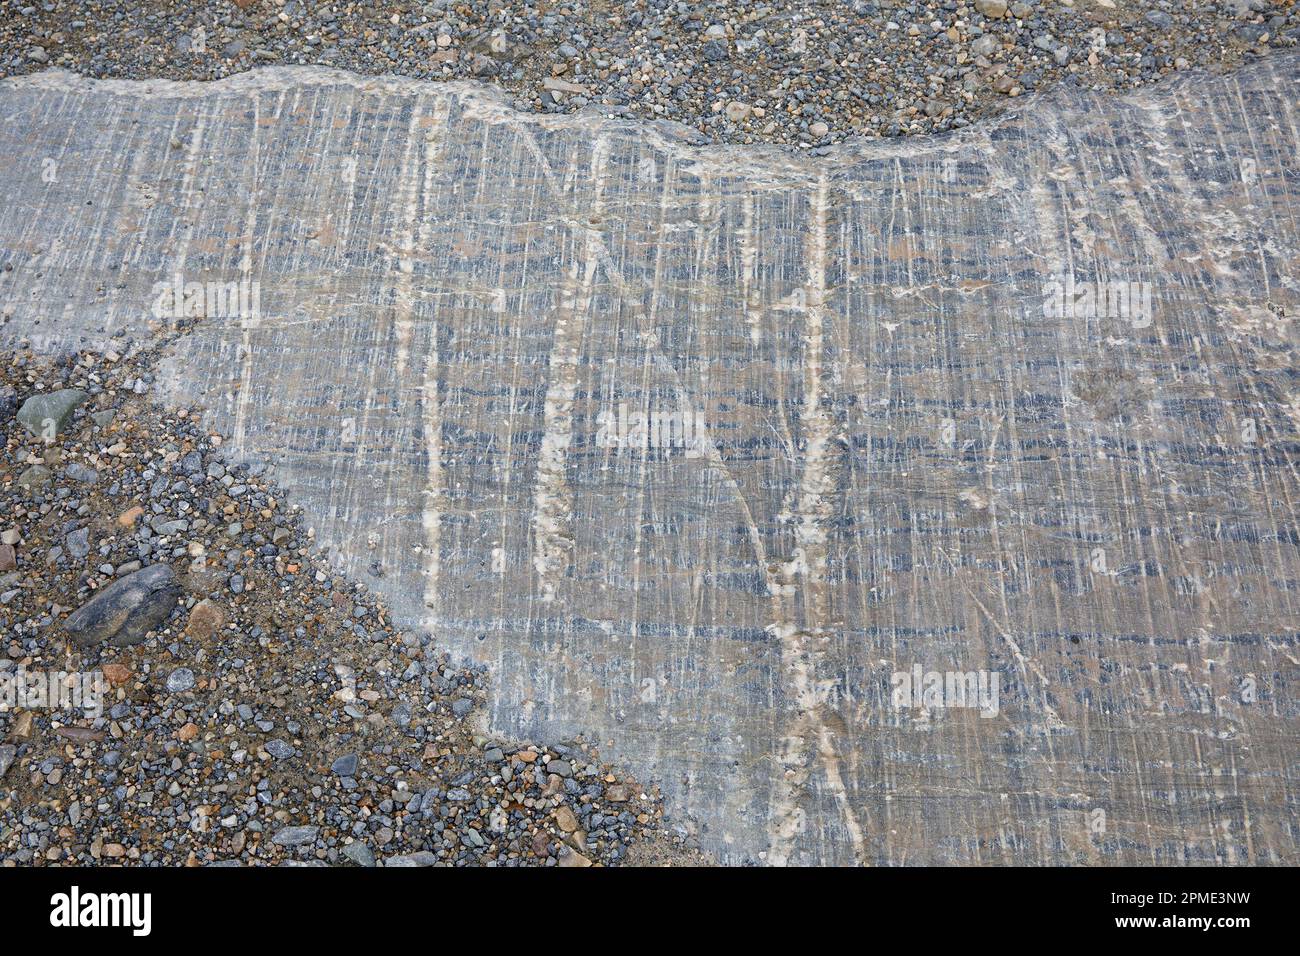 Striature glaciali lasciate dal ghiacciaio Athabasca, graffi paralleli nella roccia che mostrano la direzione del movimento del ghiaccio, Jasper National Park, Canada Foto Stock